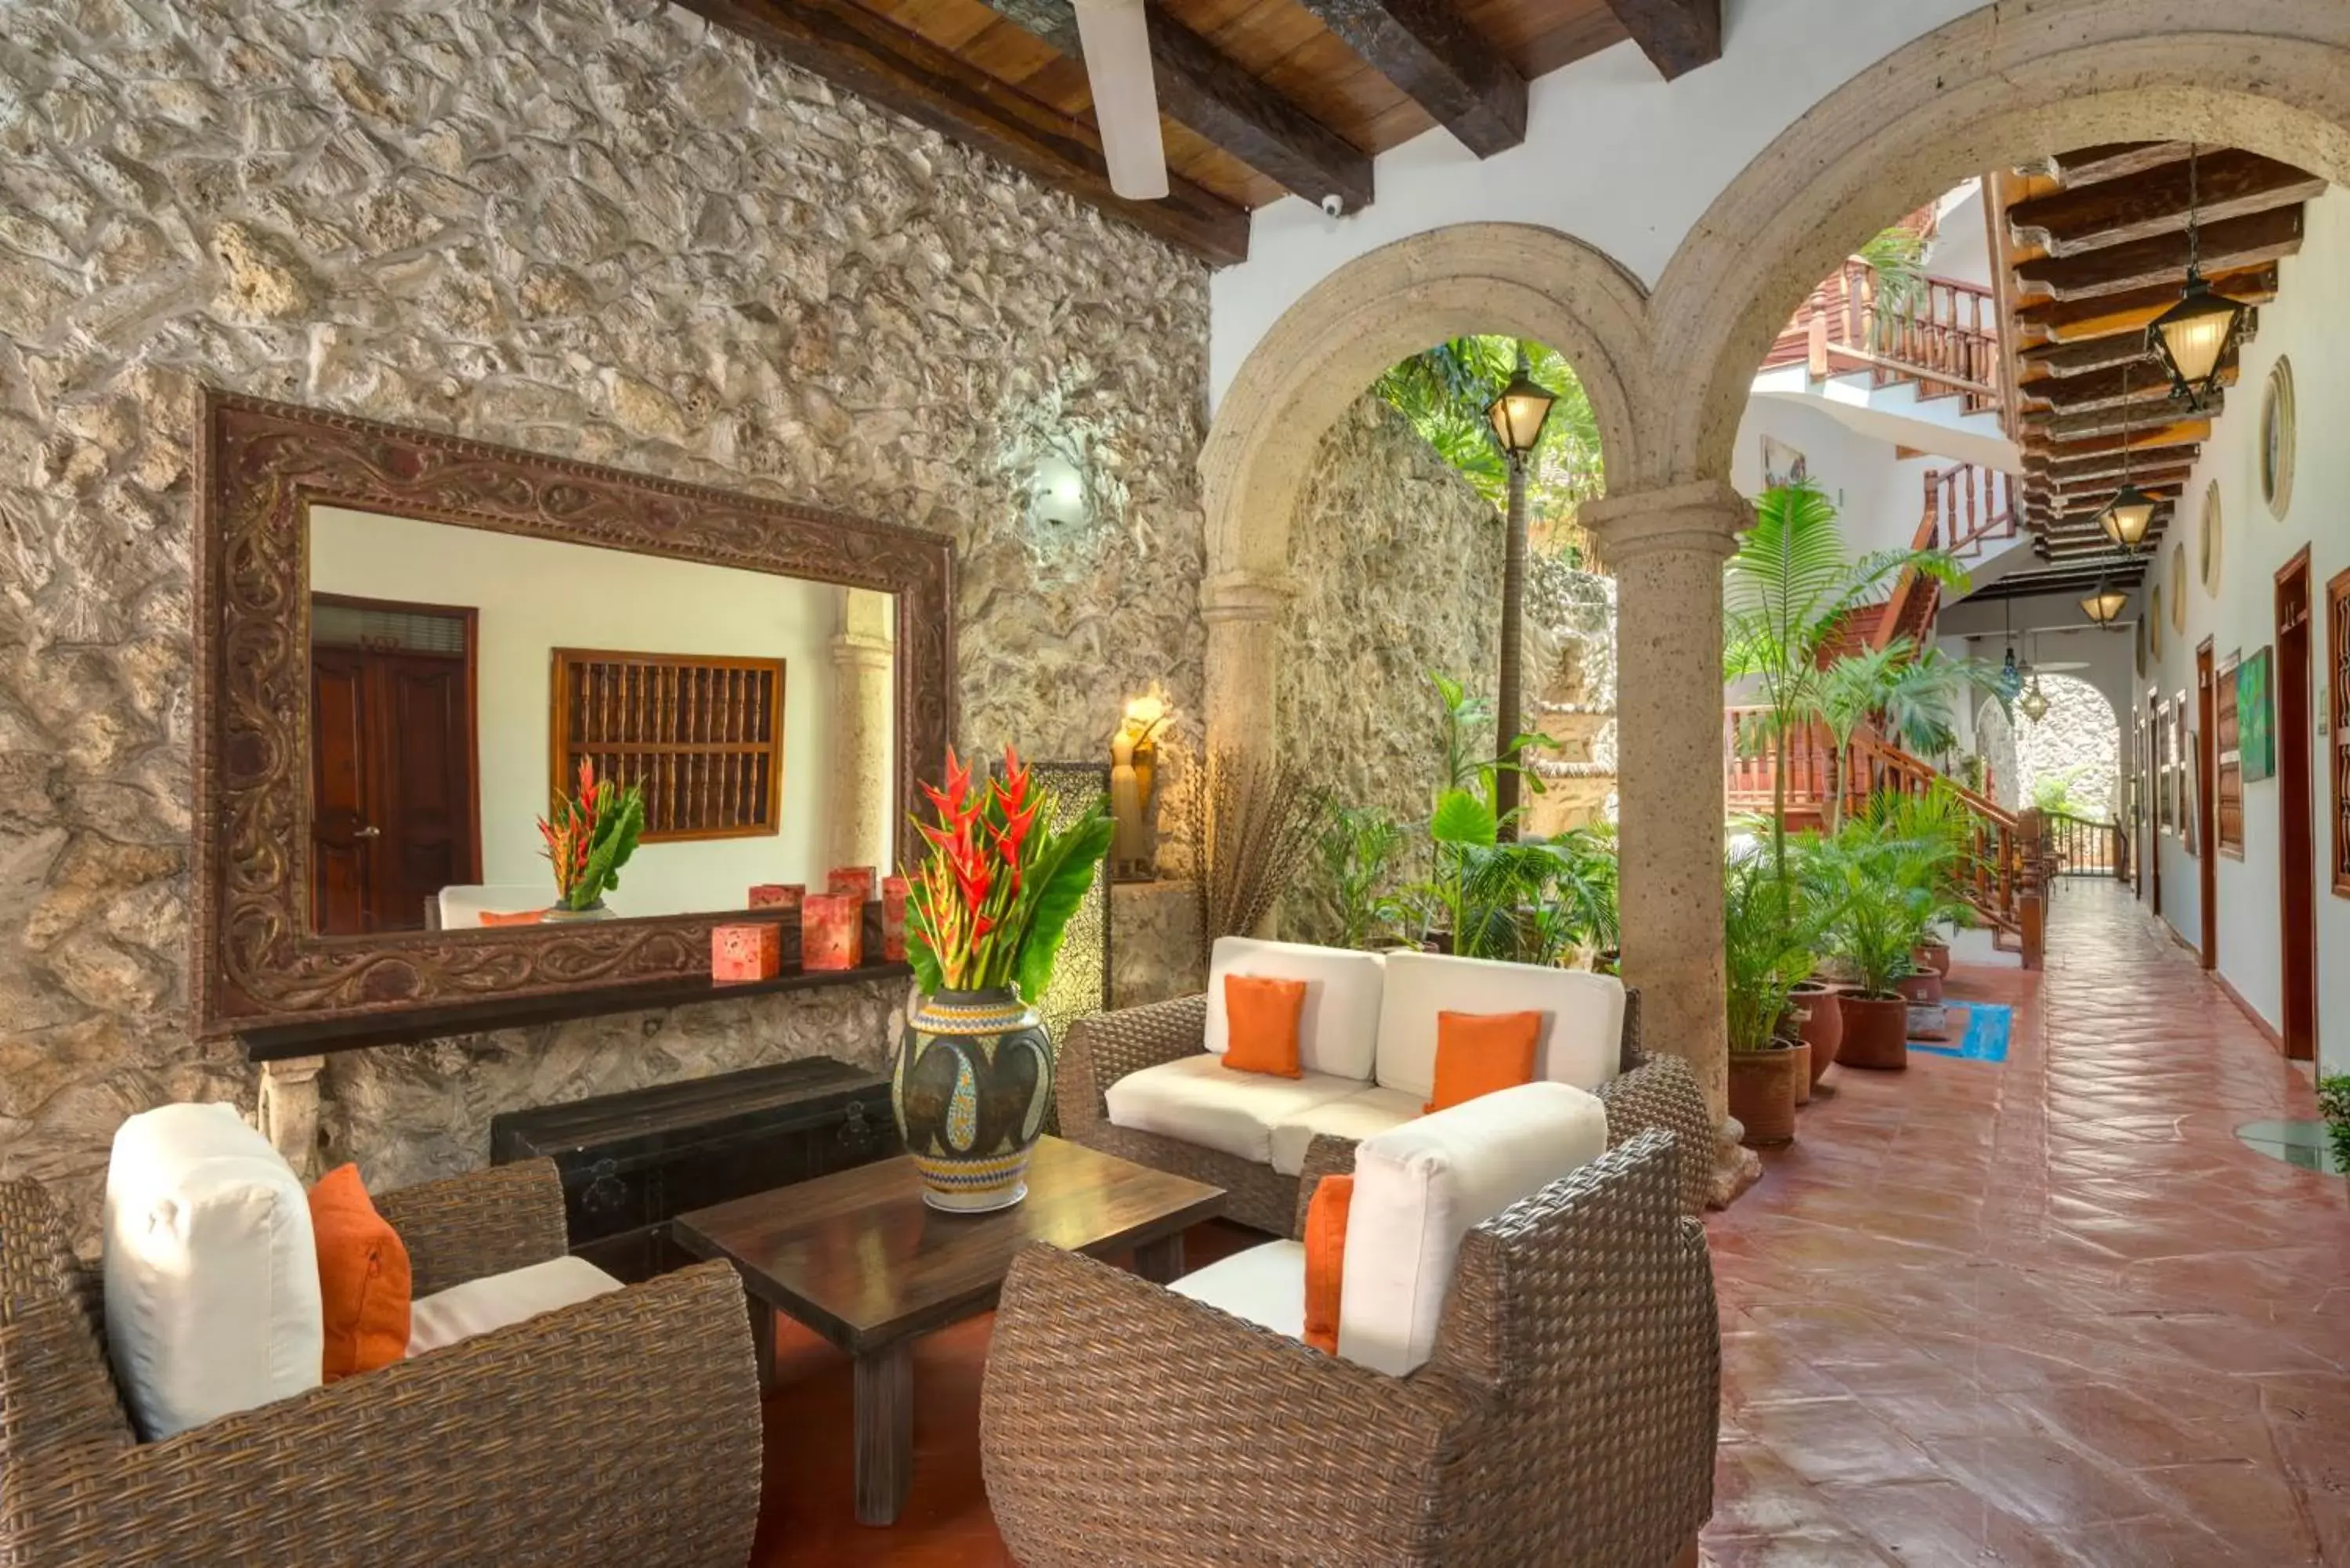 Lobby or reception in Casa Del Curato